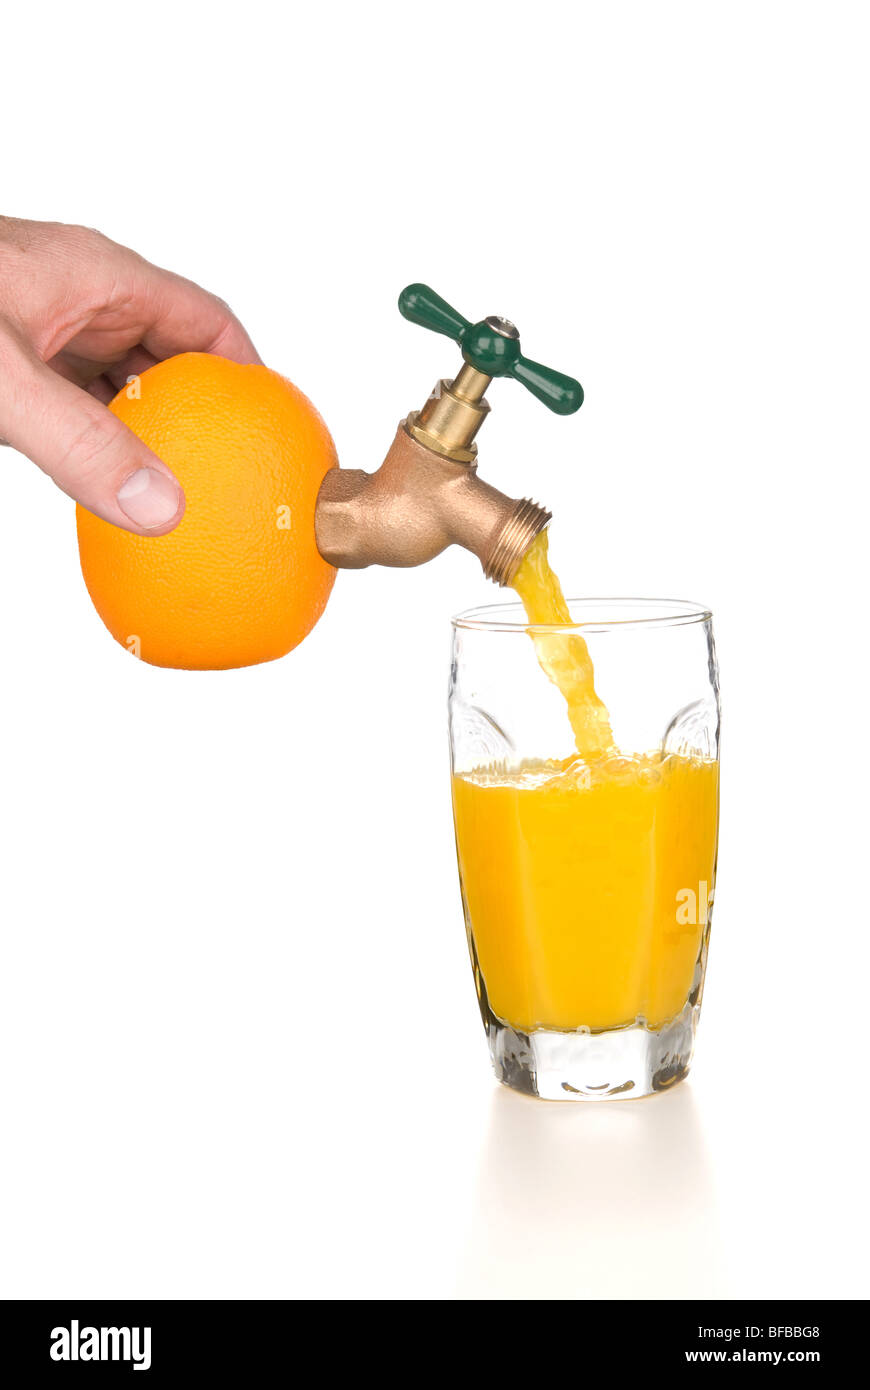 Un uomo detiene un arancione mentre il succo d'arancia fresco si riversa attraverso un rubinetto in un bicchiere. Foto Stock